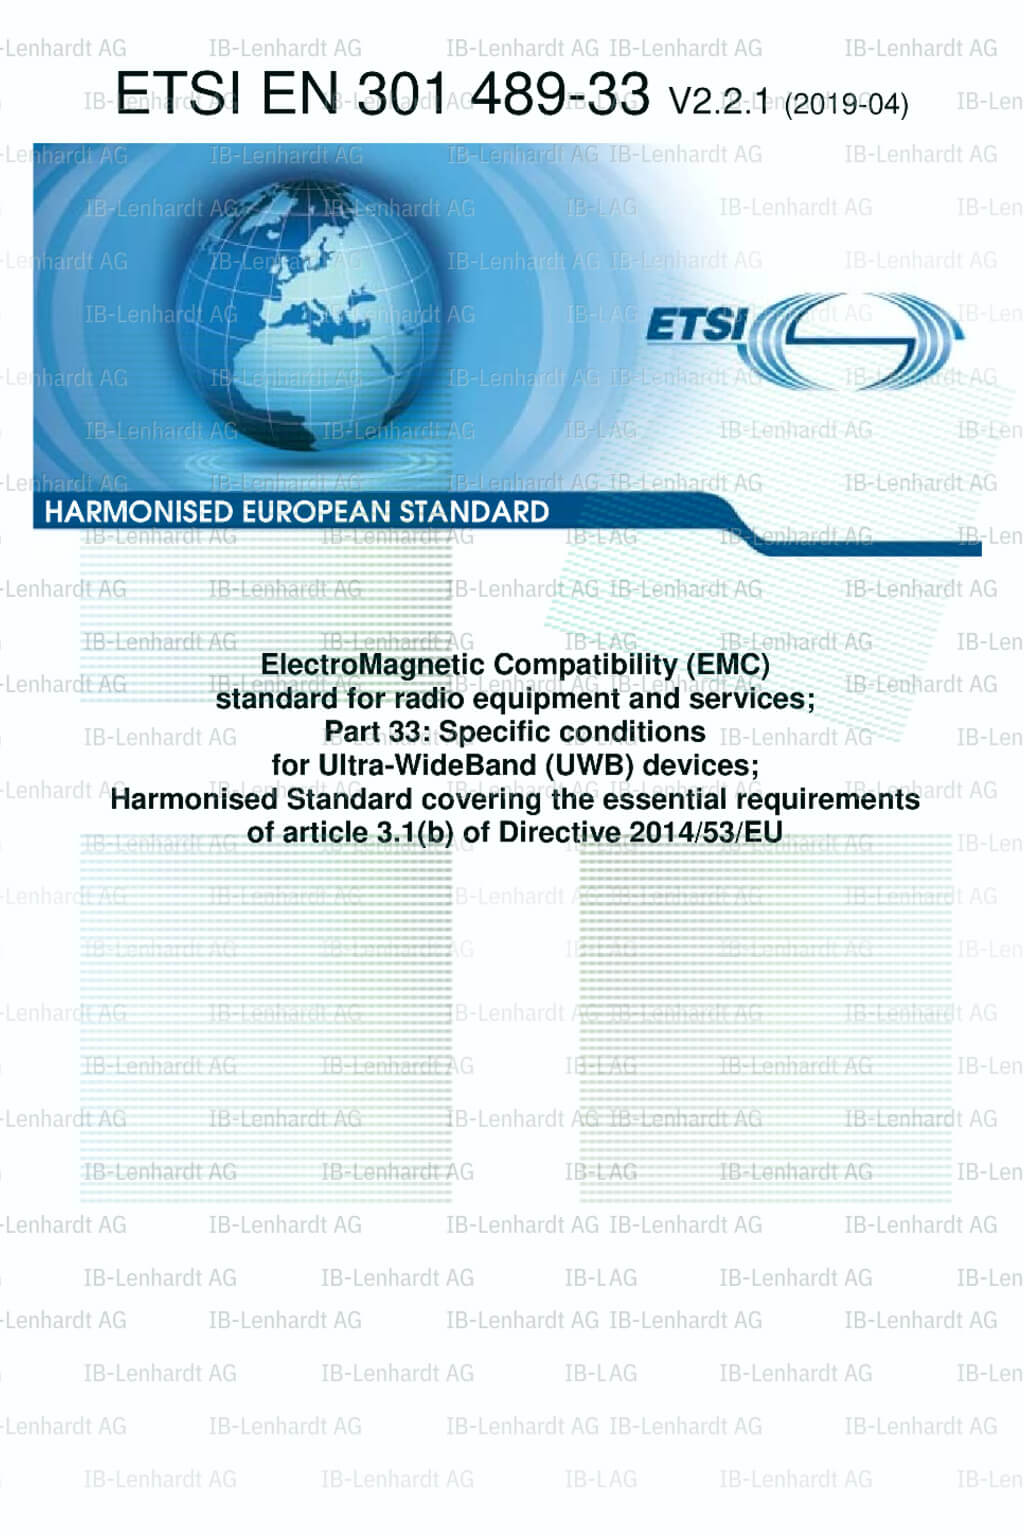 ETSI EN 301 489-33 V2.2.1